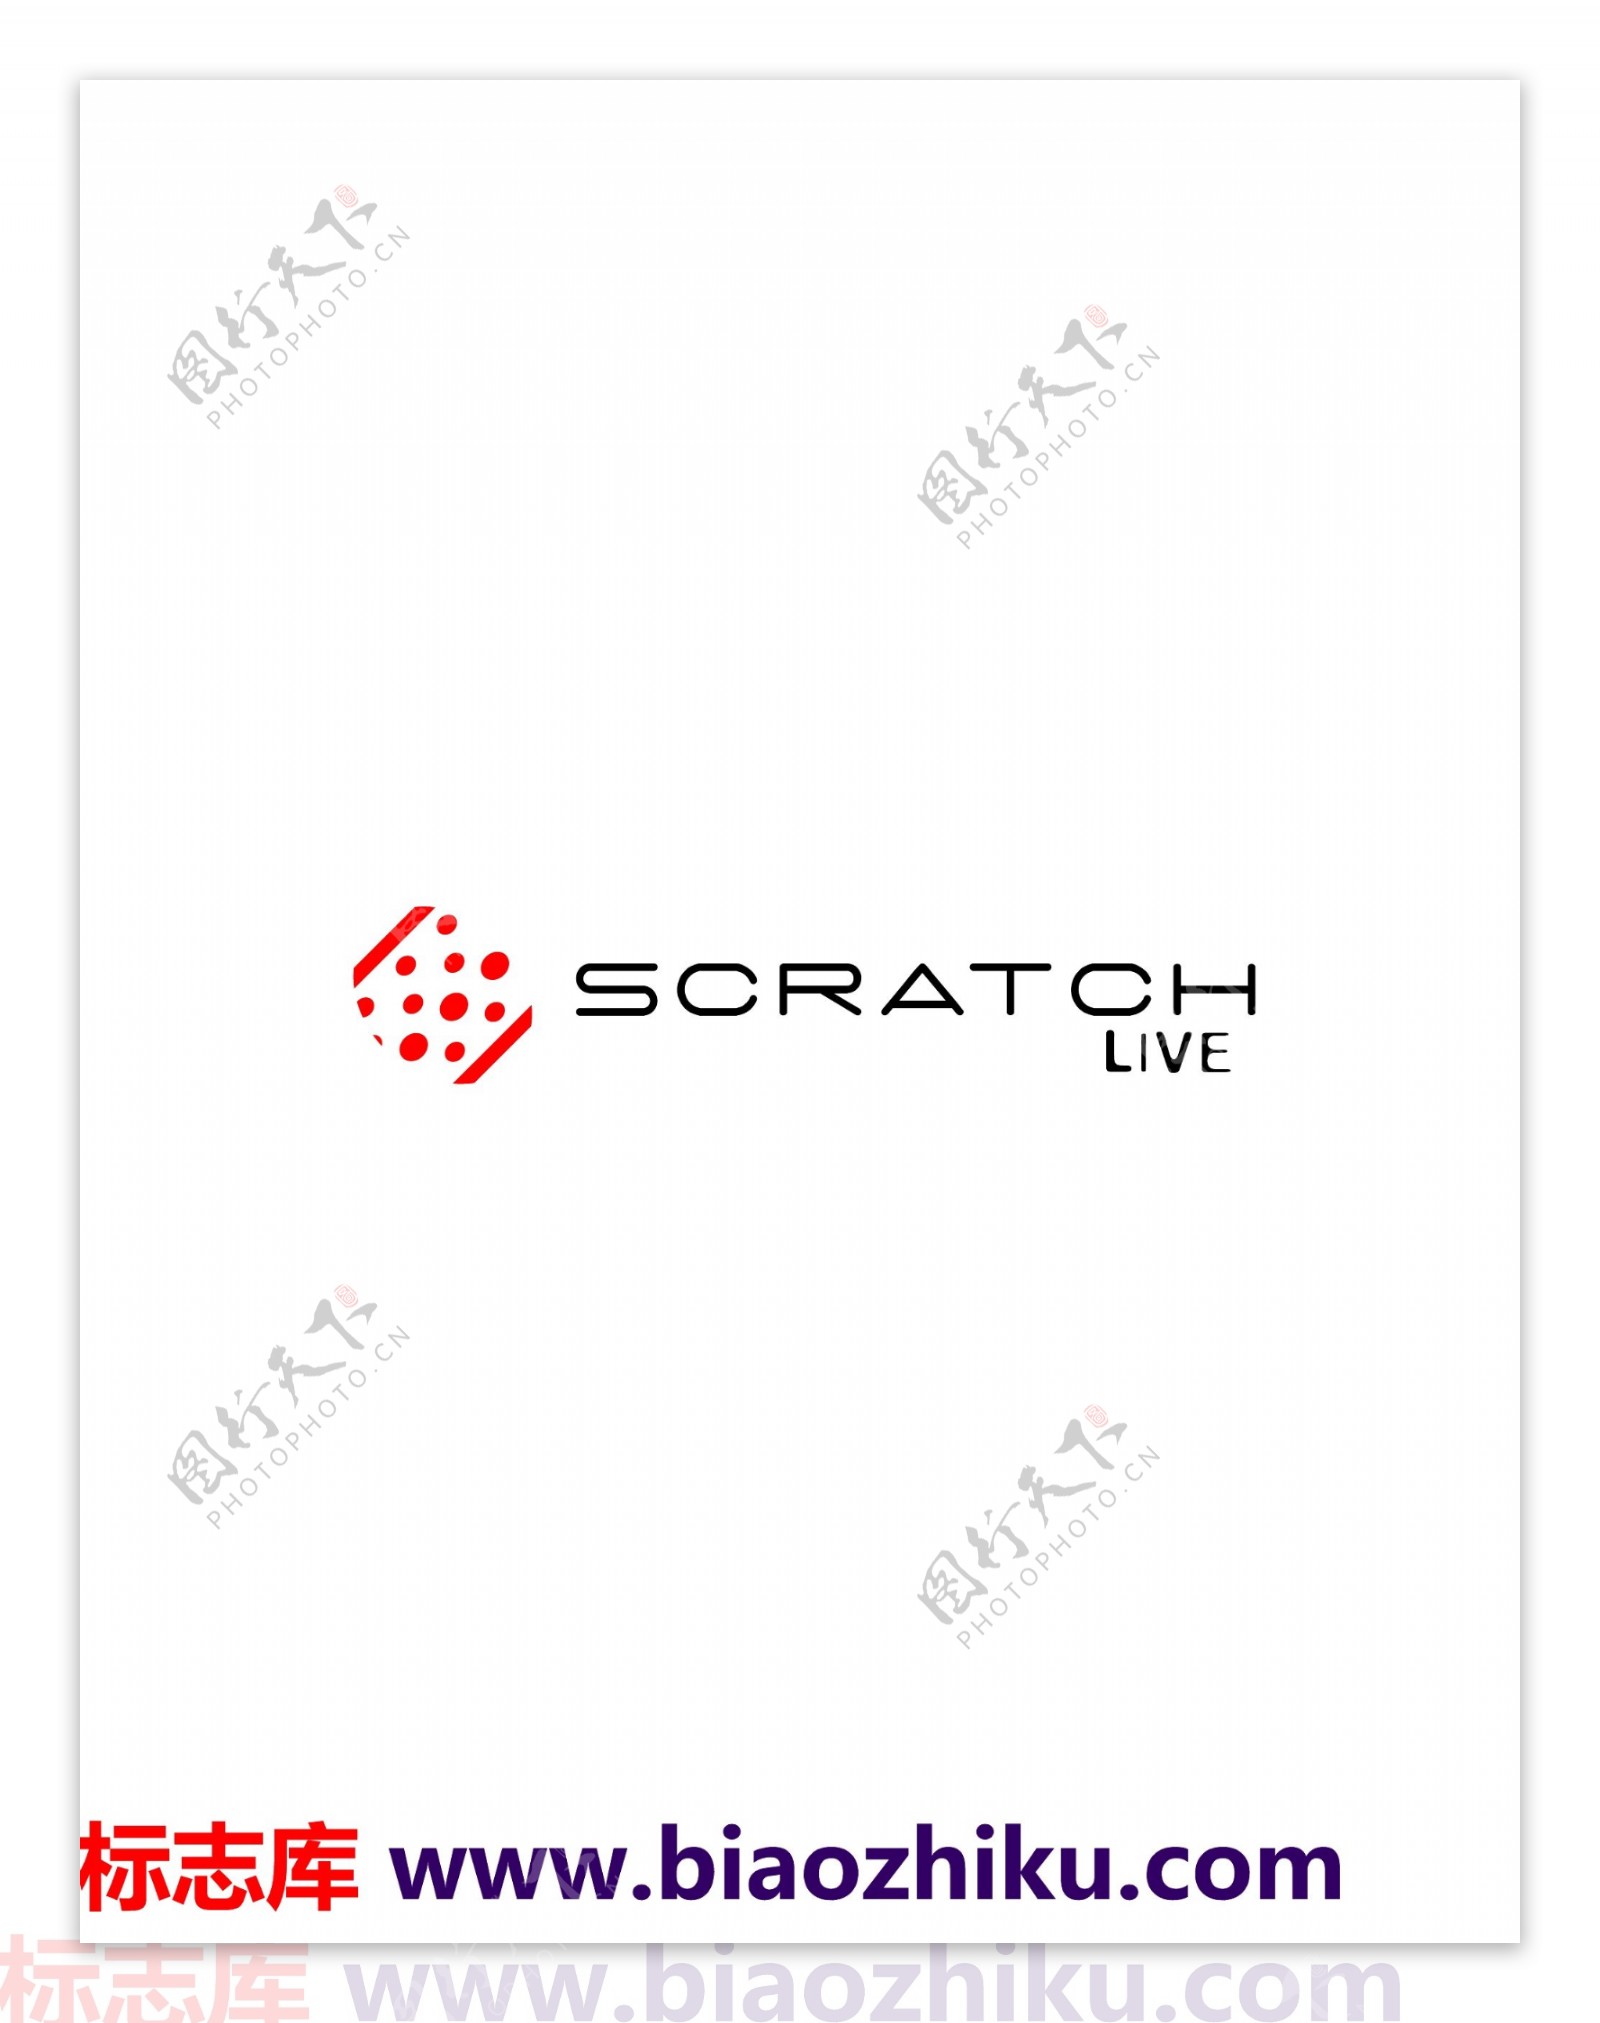 ScratchLivelogo设计欣赏ScratchLive唱片公司LOGO下载标志设计欣赏